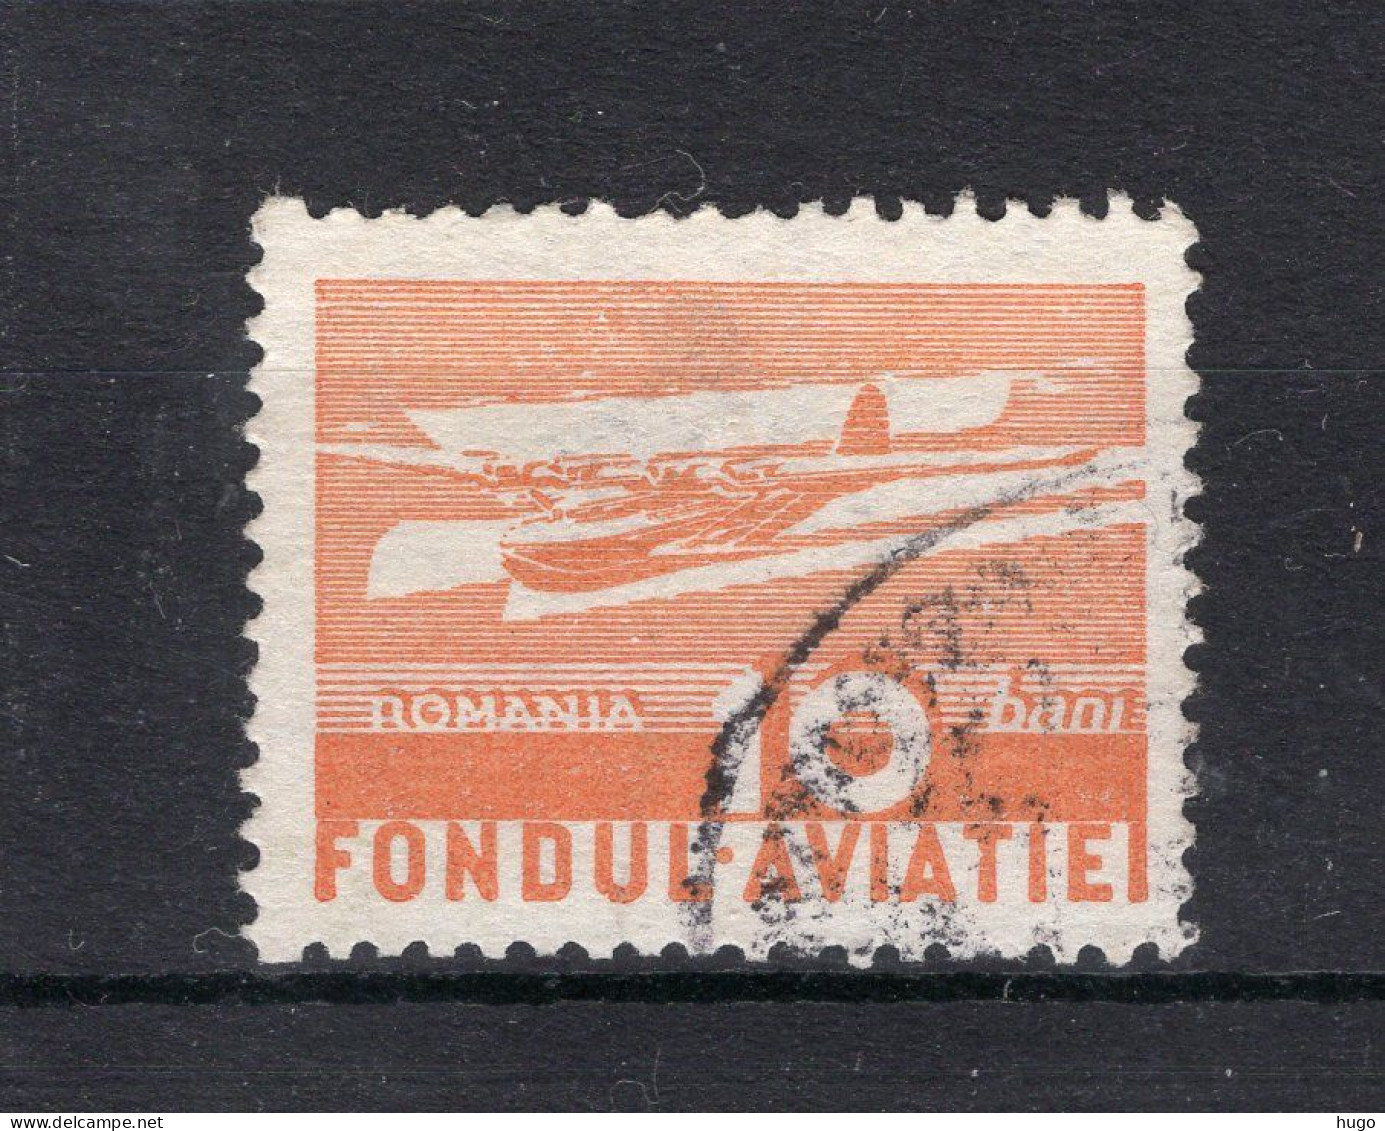 ROEMENIE Yt. PA28° Gestempeld Luchtpost 1937 - Usati